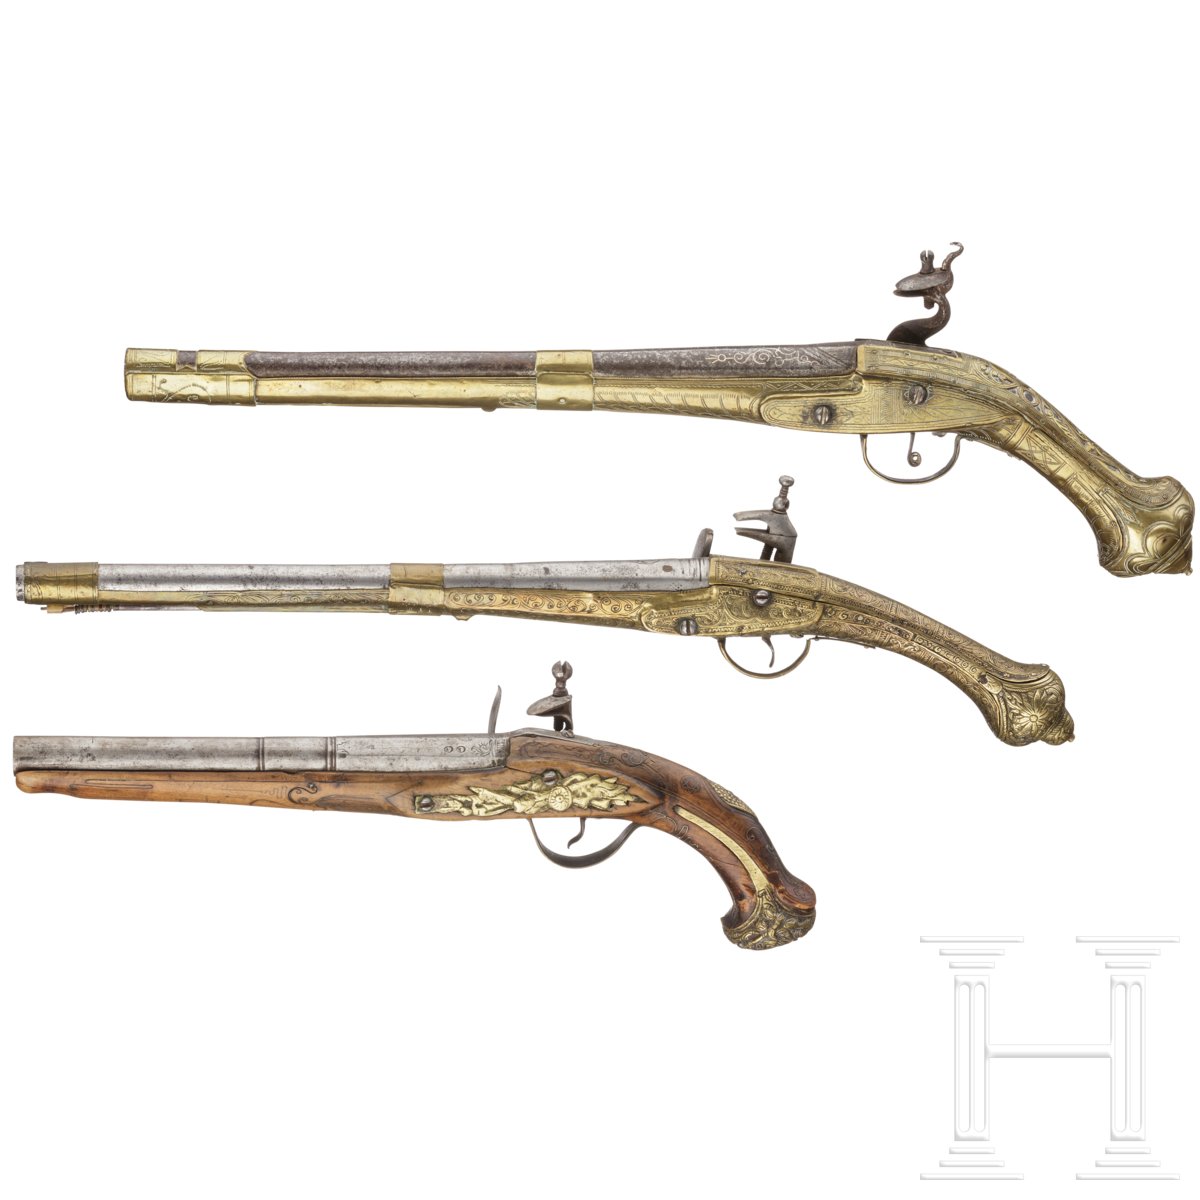 Zwei Miquelet- und eine Steinschlosspistole von Typ Kubur, osmanisch, Griechenland, 19. Jhdt. - Image 2 of 2